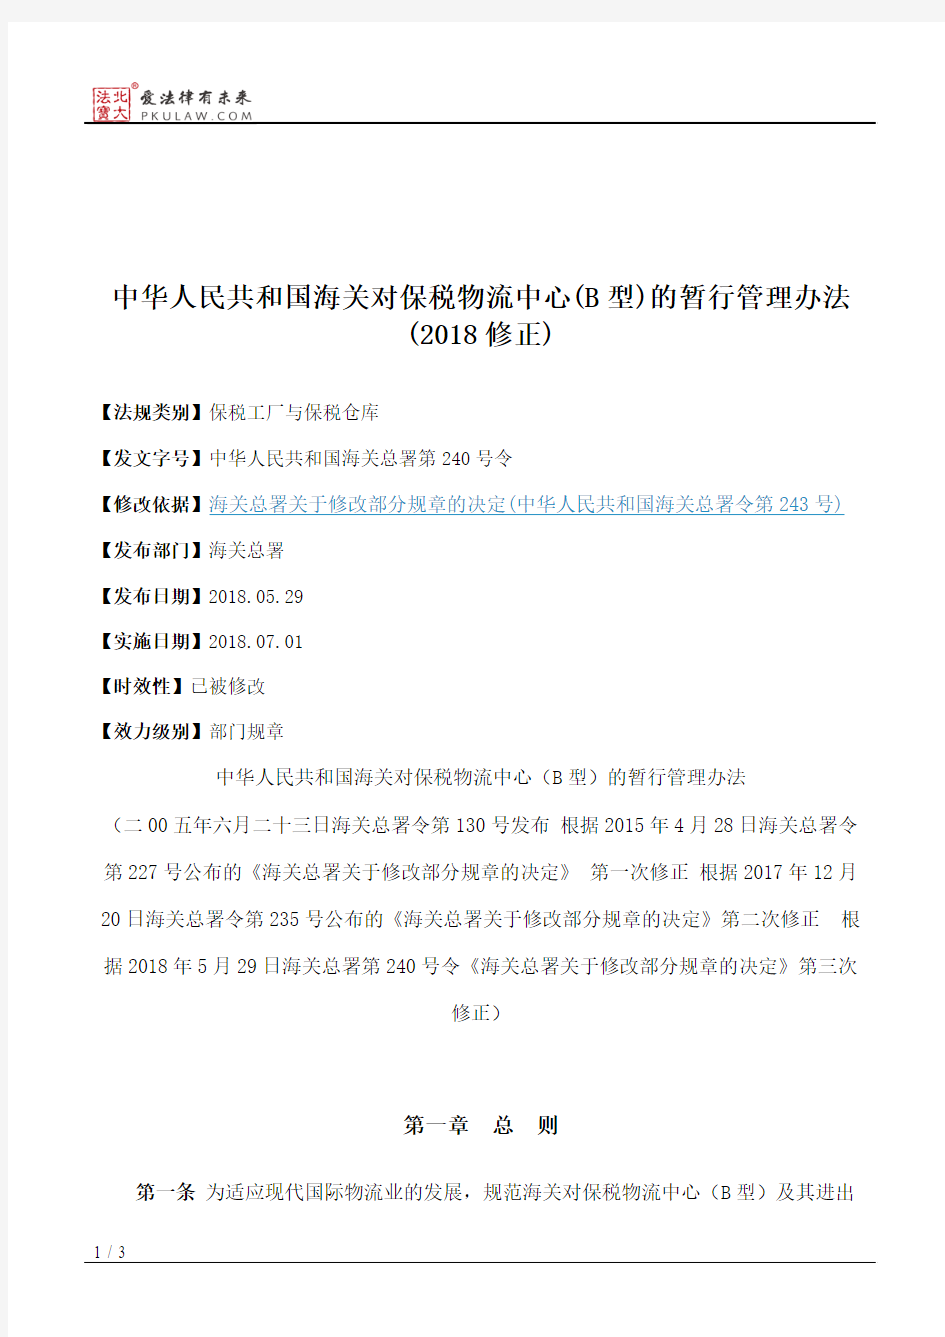 中华人民共和国海关对保税物流中心(B型)的暂行管理办法(2018修正)